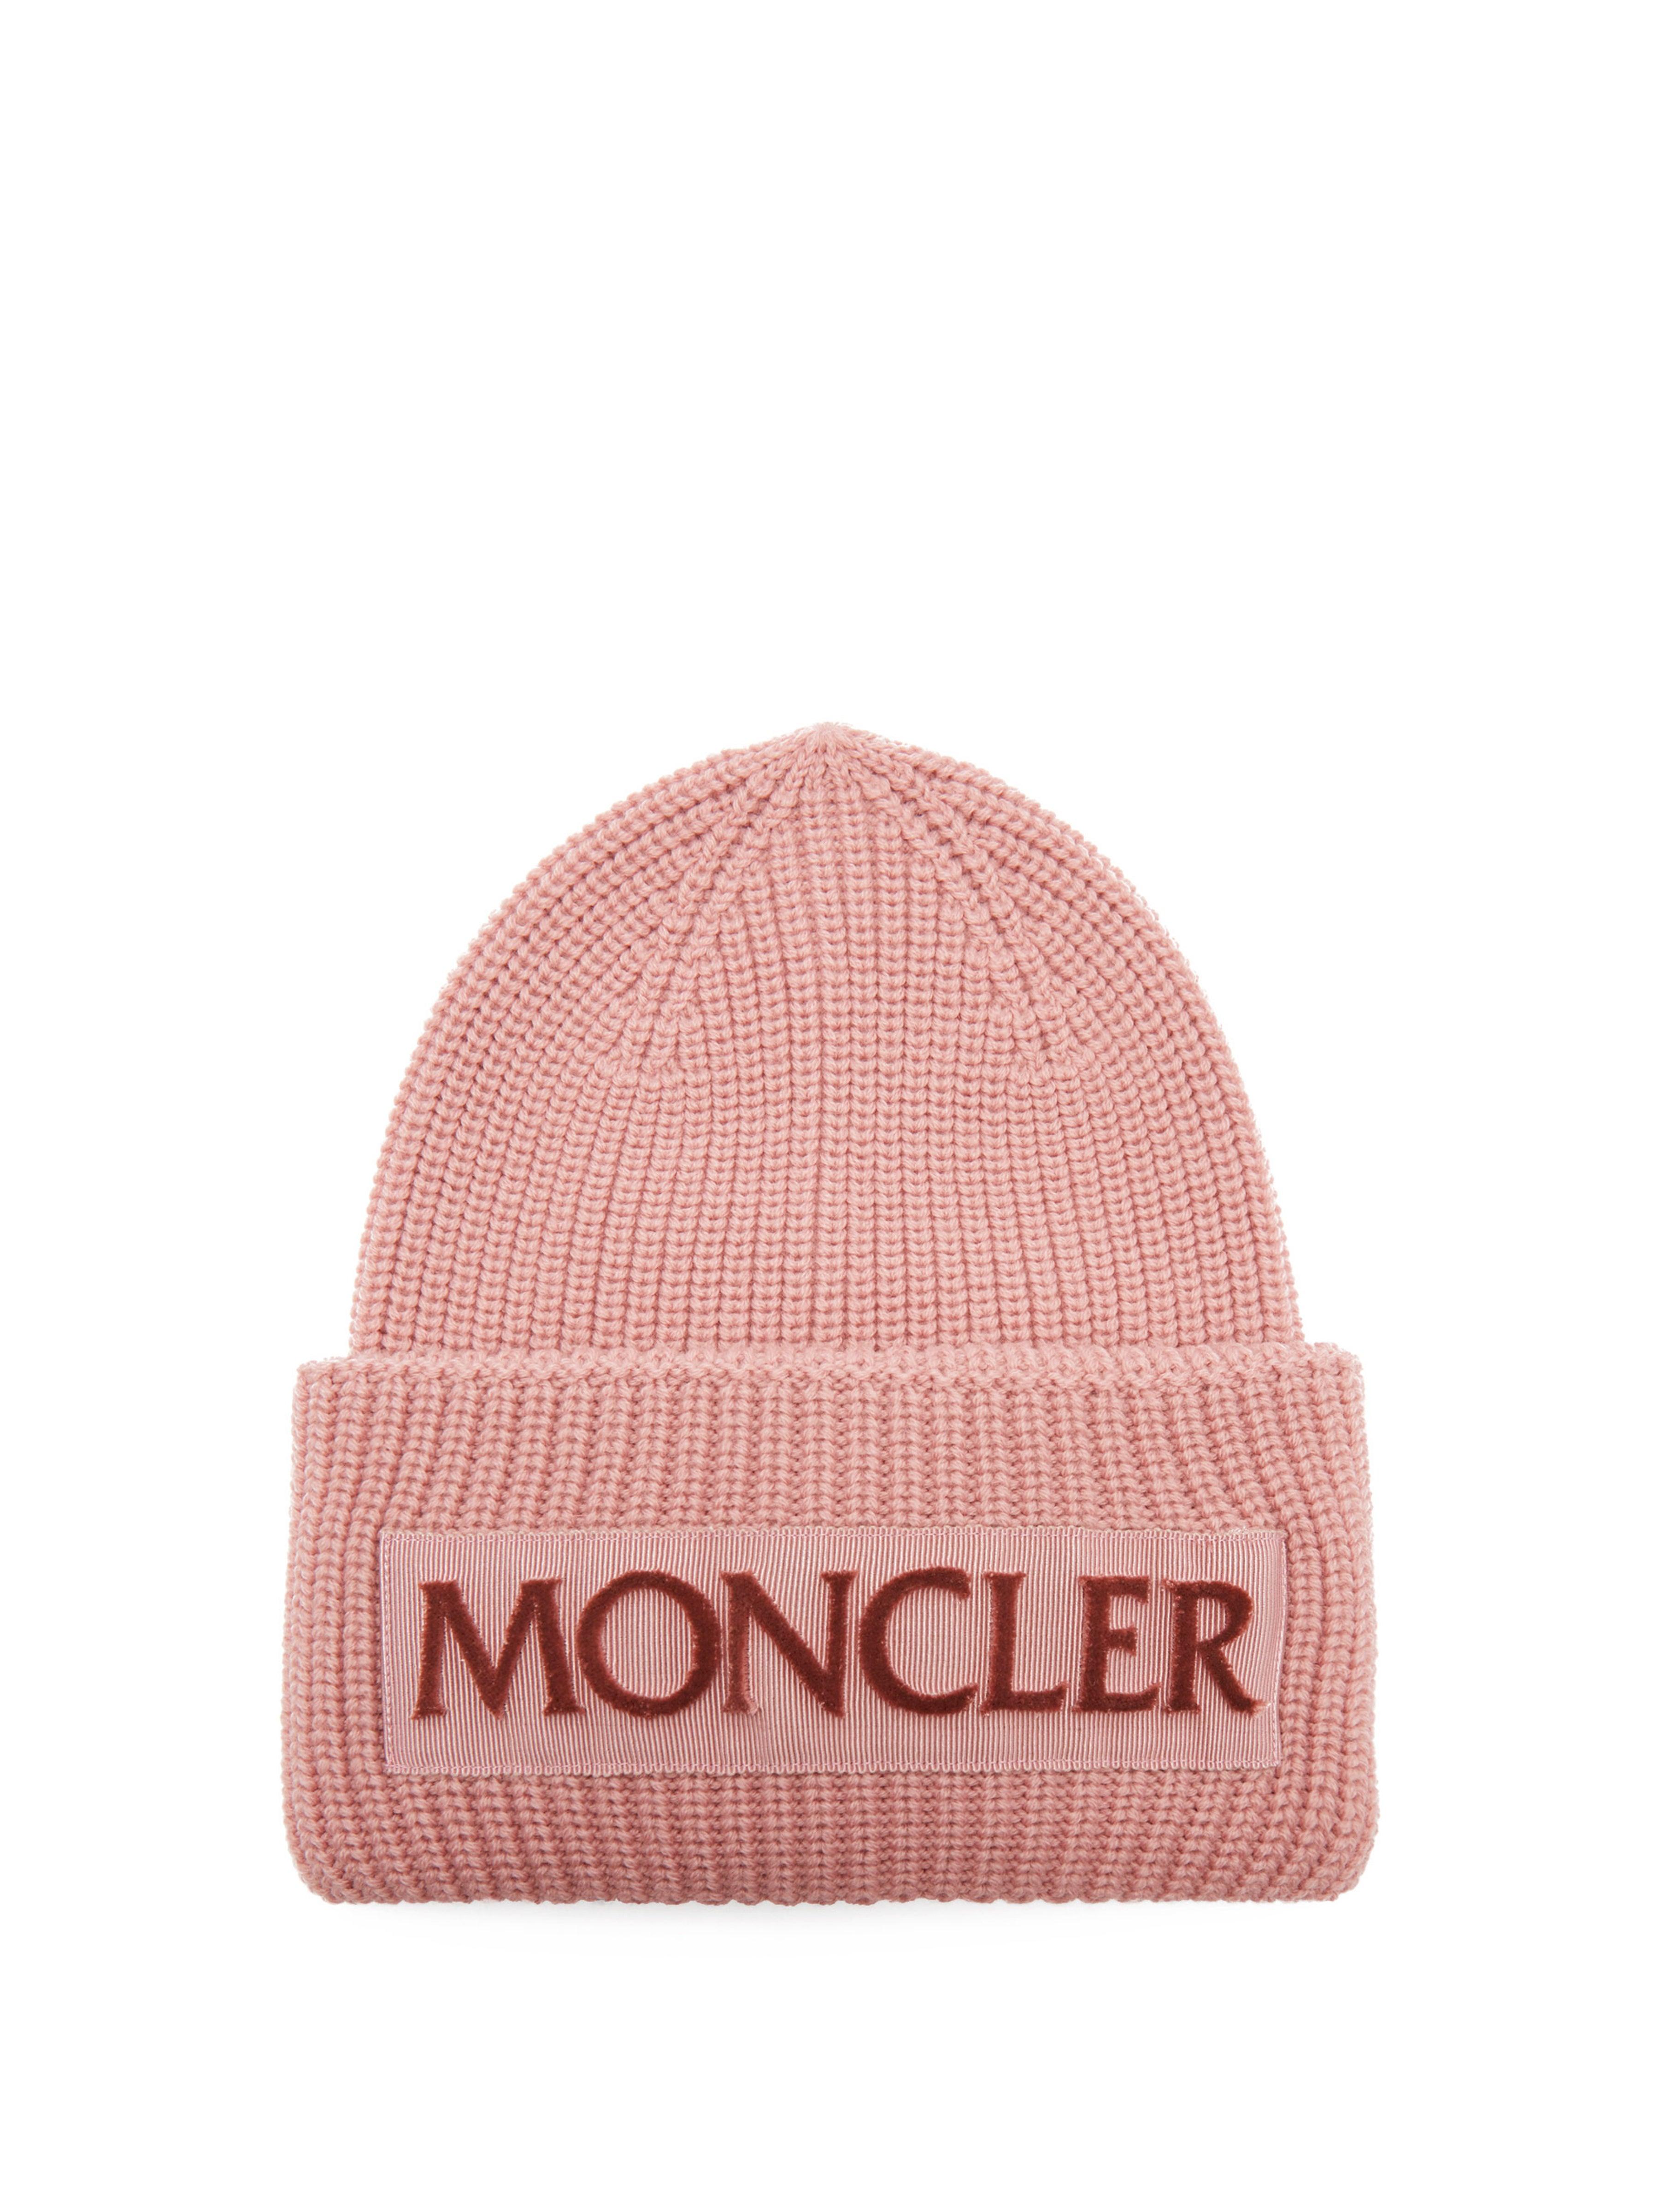 Moncler Velvet-logo Wool Beanie Hat in Light Pink (Pink) - Lyst